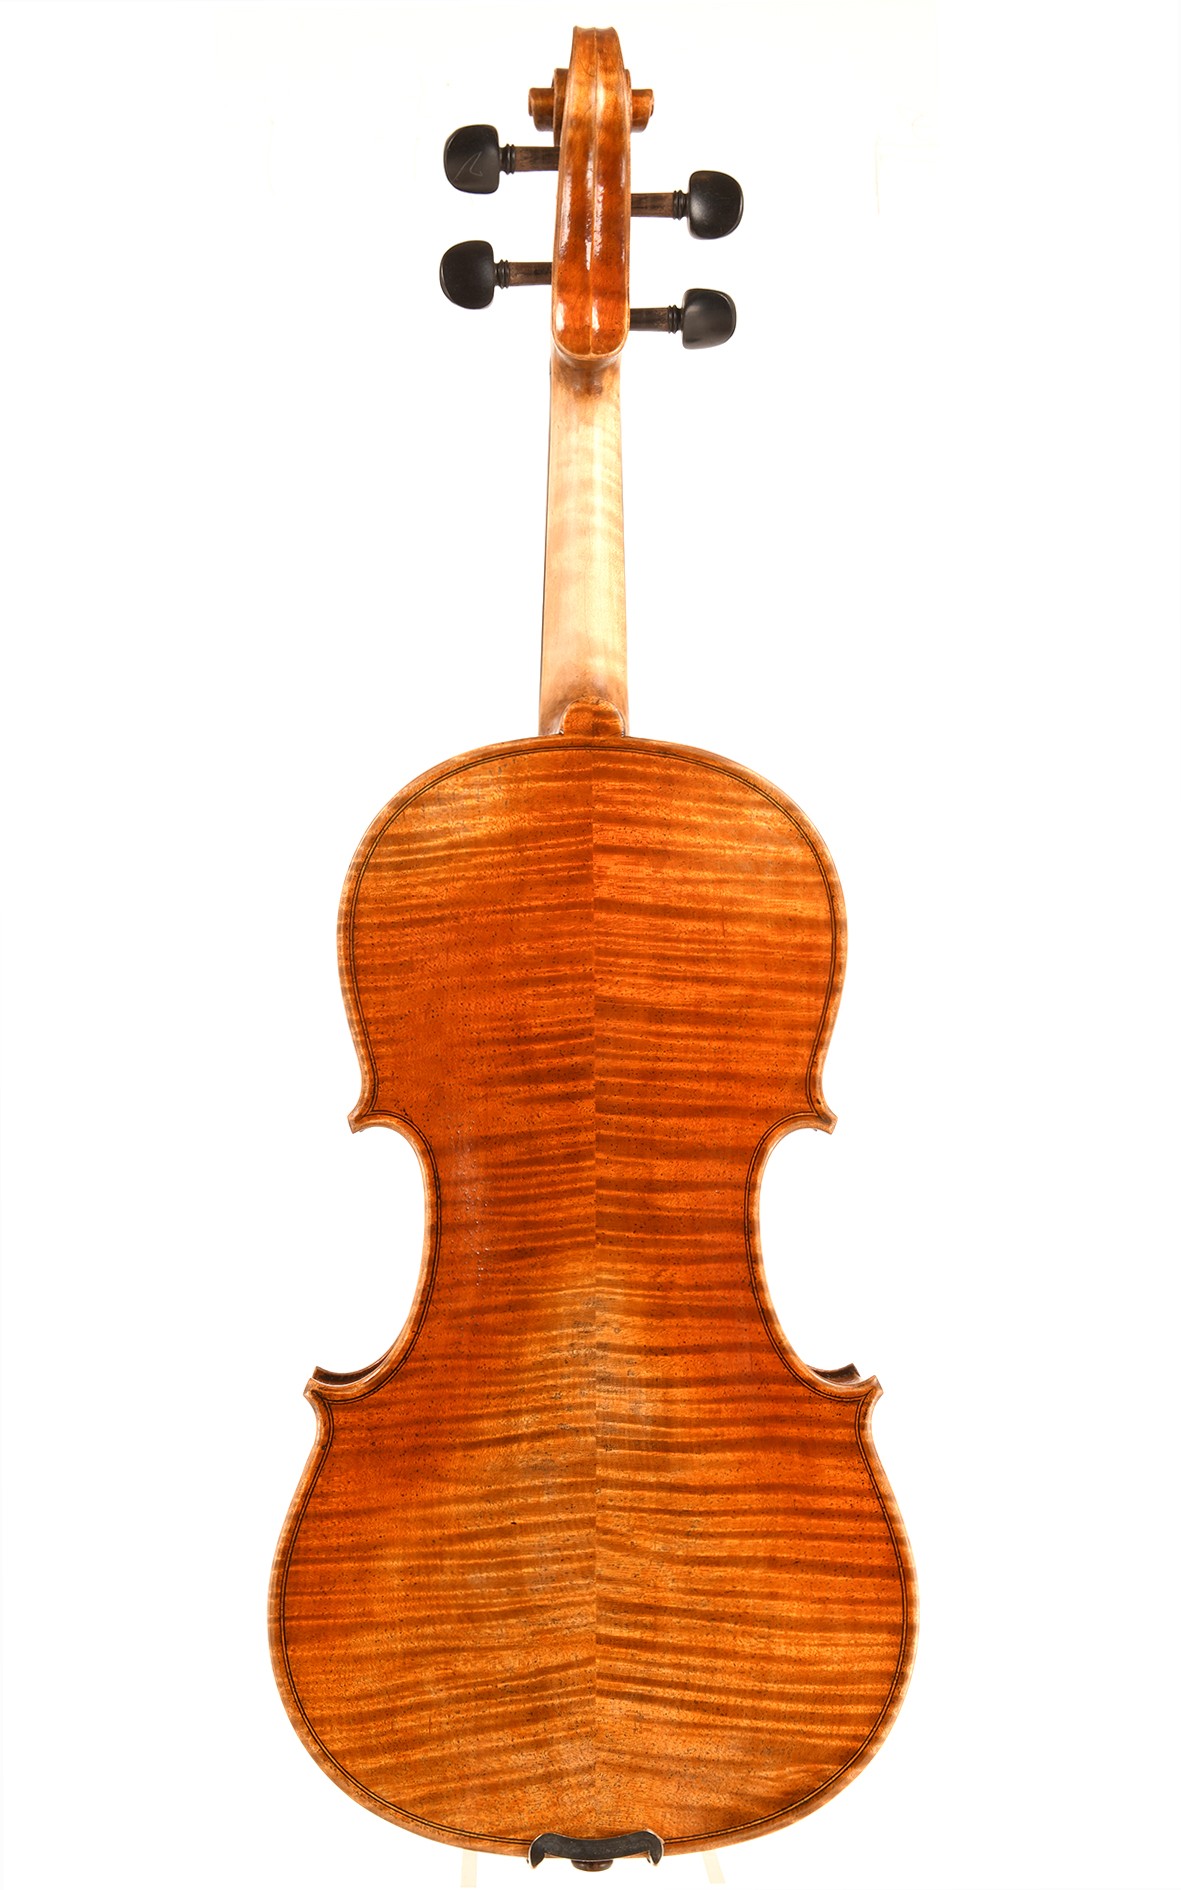 Opus 11 violine